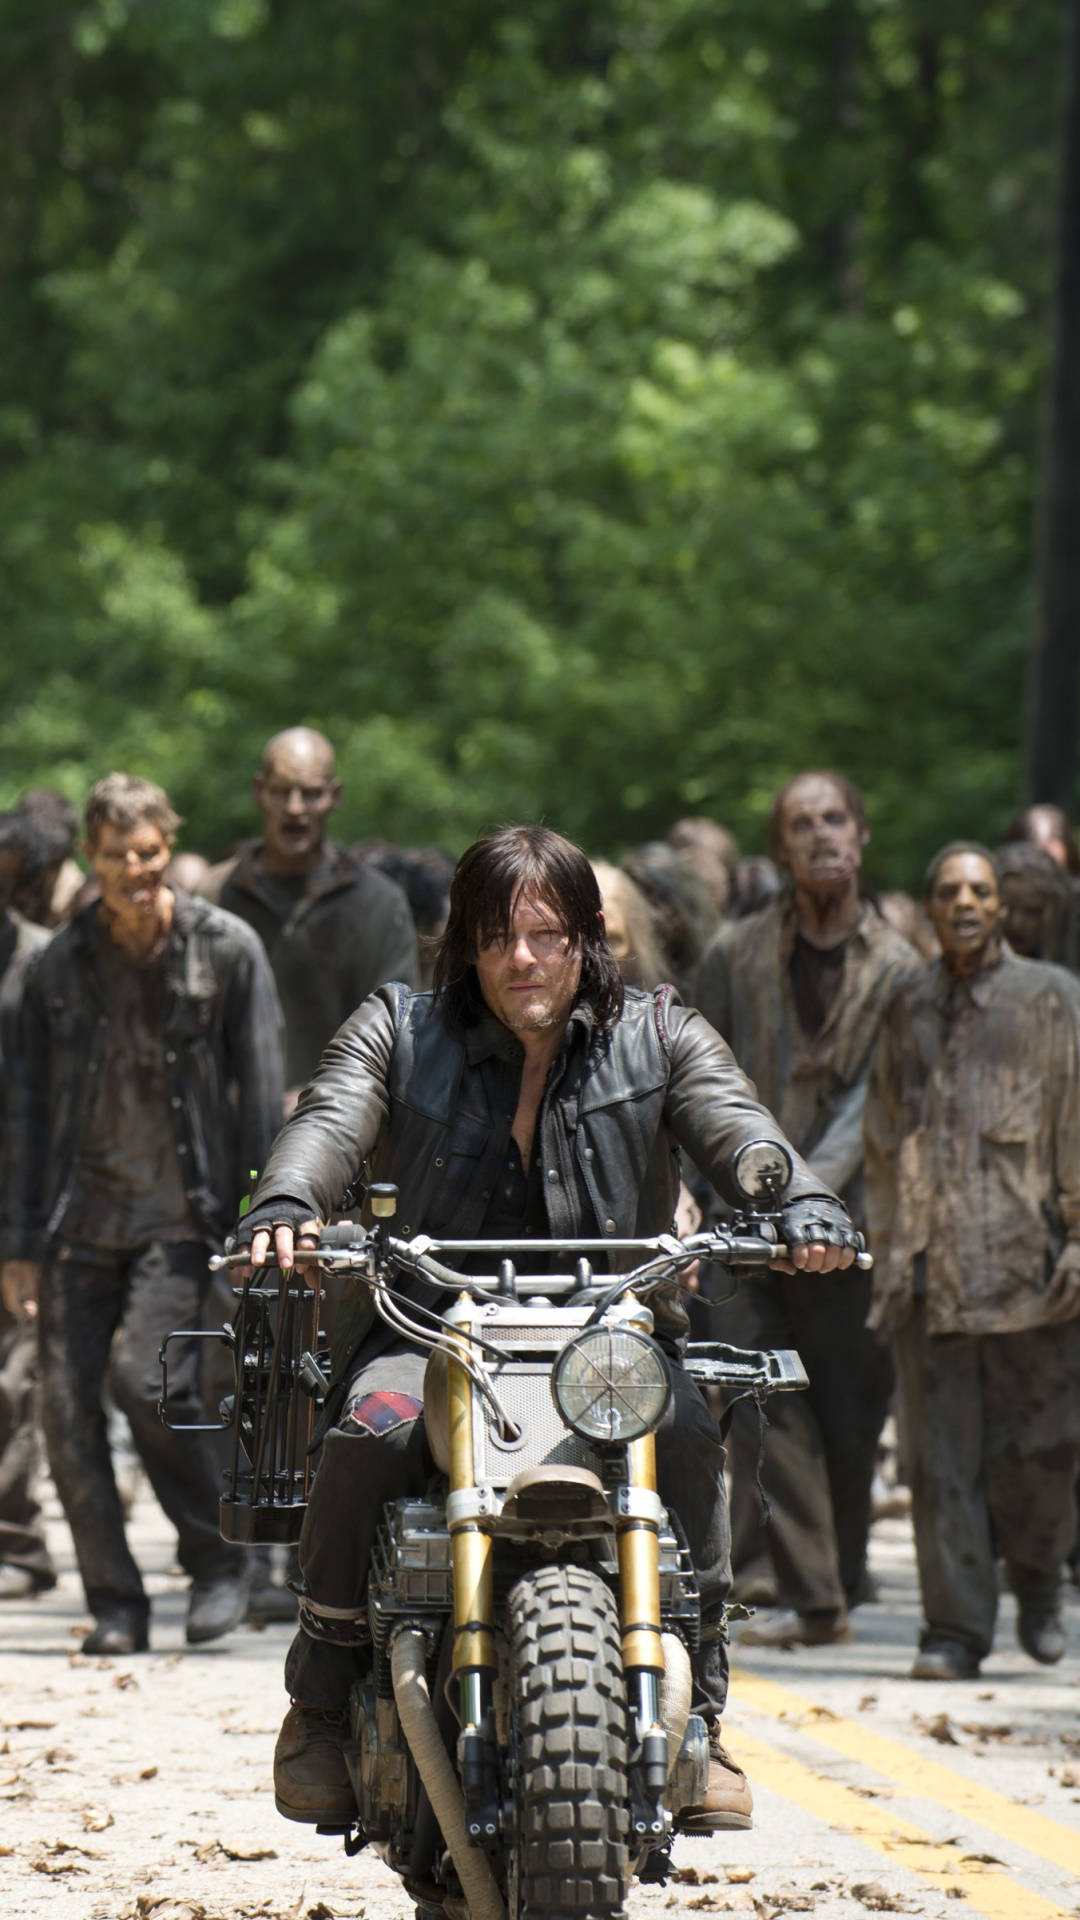 Preparatiper L'apocalisse Zombie Con Daryl Dixon Da The Walking Dead. Sfondo